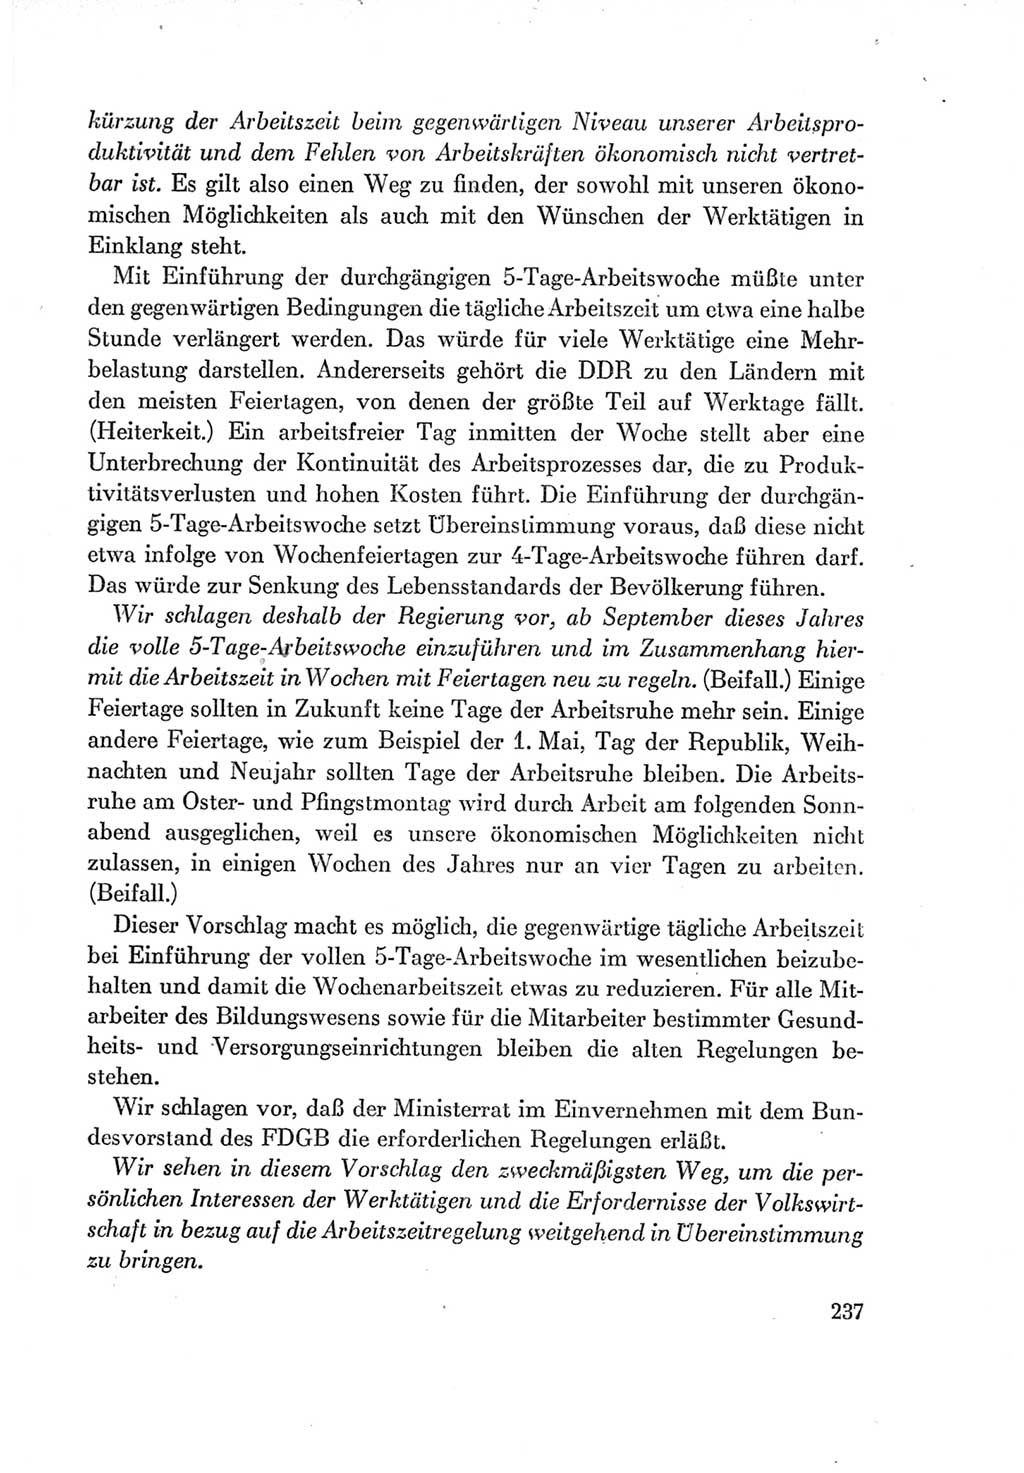 Protokoll der Verhandlungen des Ⅶ. Parteitages der Sozialistischen Einheitspartei Deutschlands (SED) [Deutsche Demokratische Republik (DDR)] 1967, Band Ⅰ, Seite 237 (Prot. Verh. Ⅶ. PT SED DDR 1967, Bd. Ⅰ, S. 237)